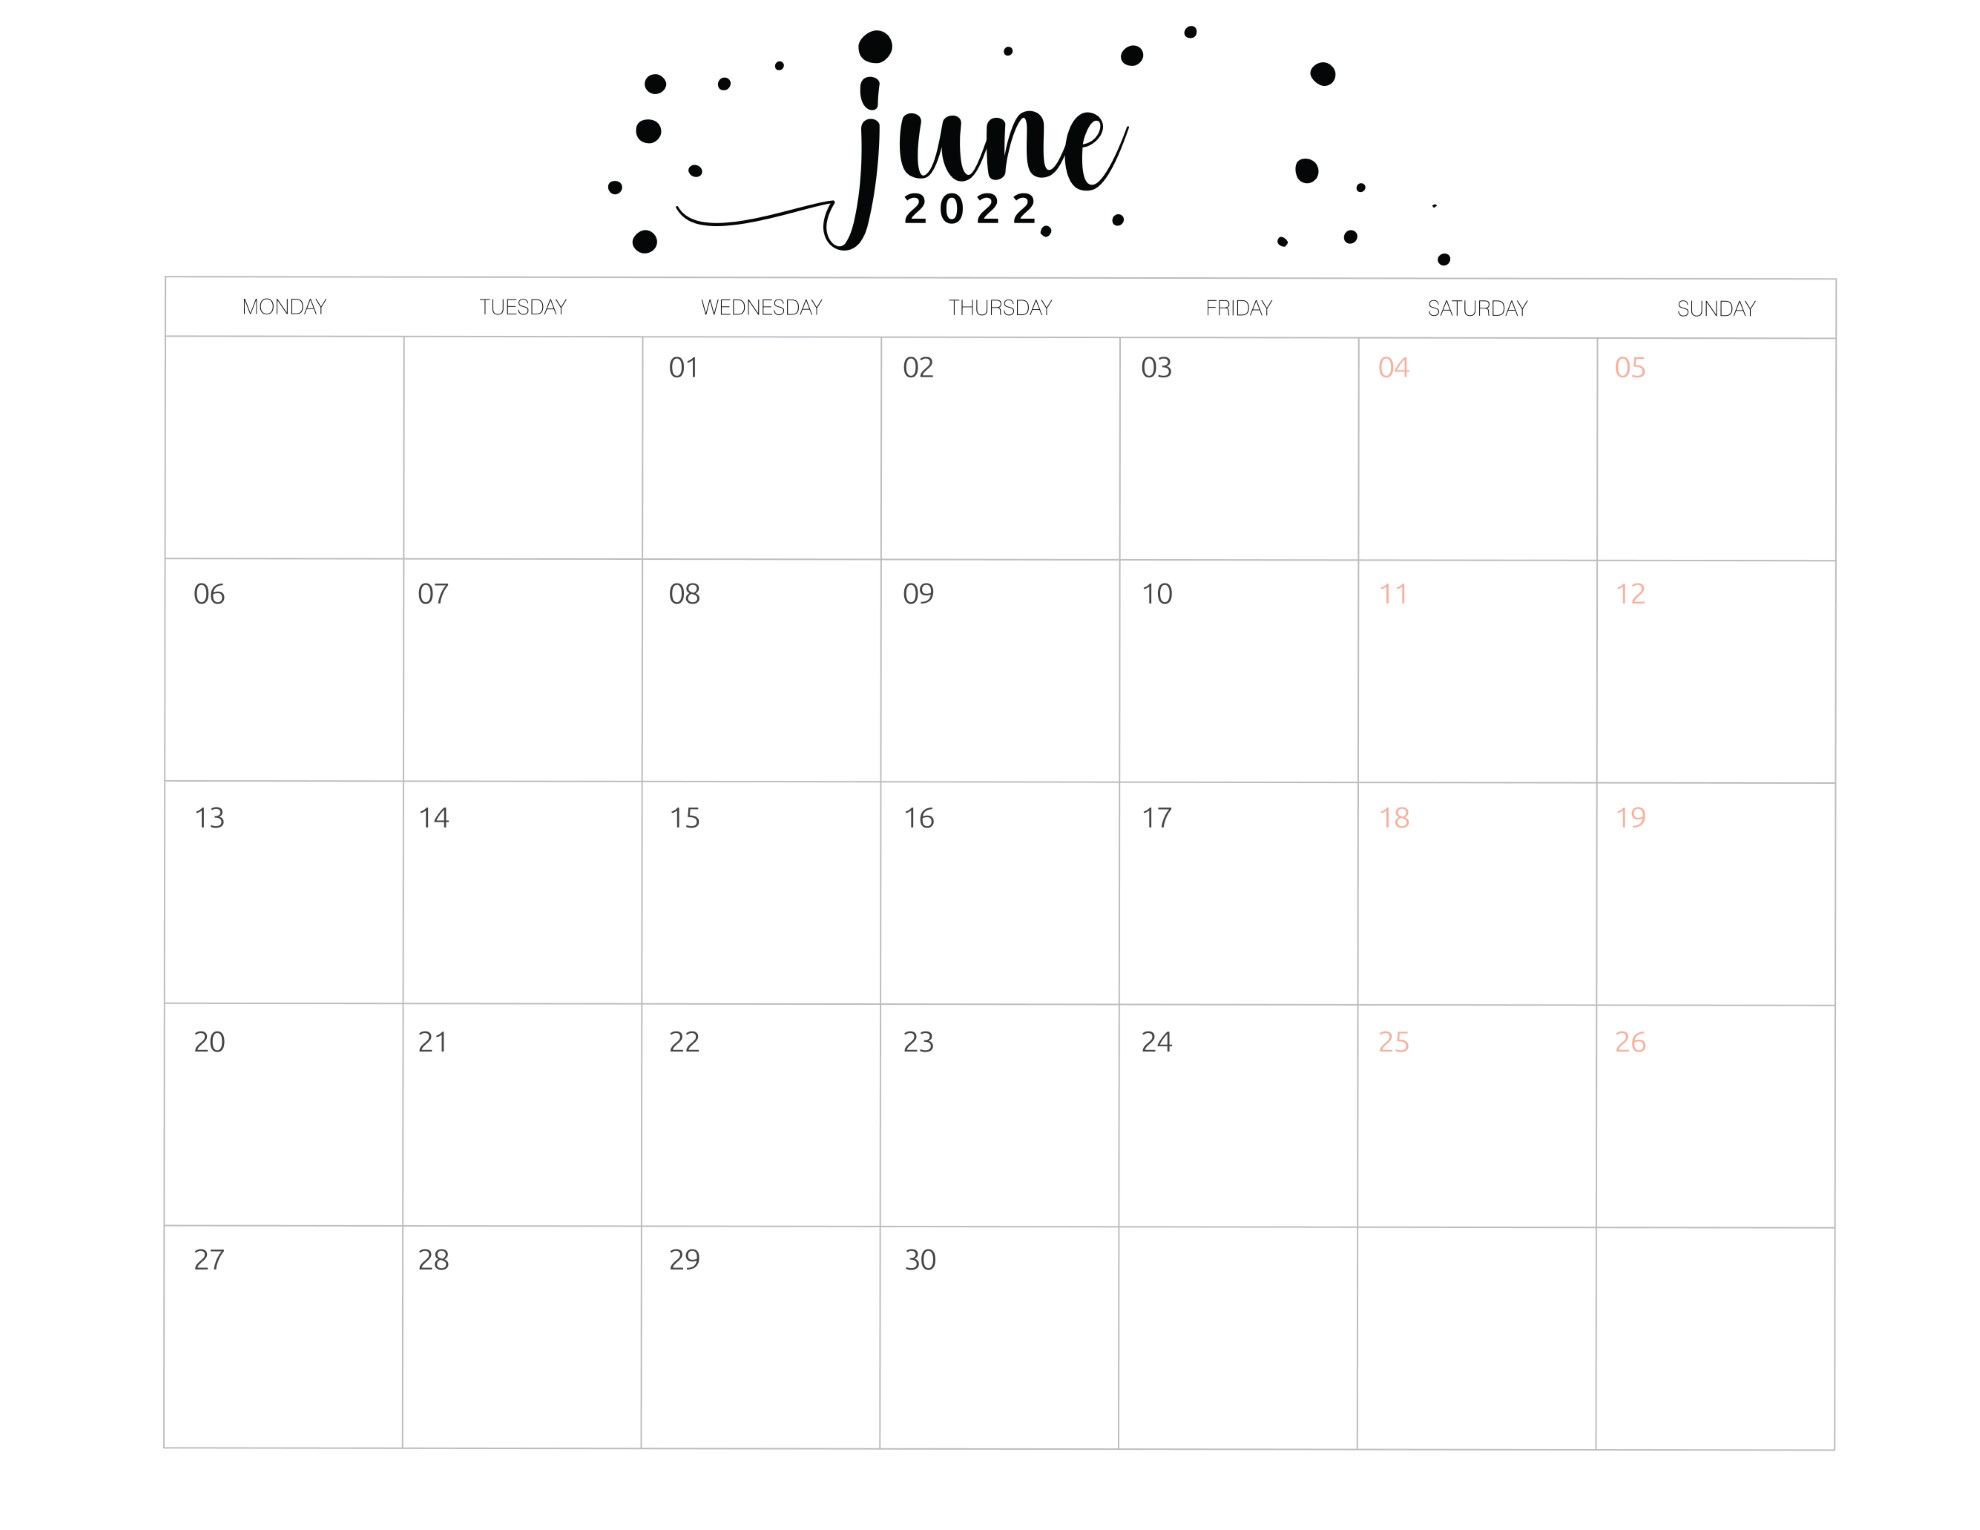 calendario 2022 basico junho